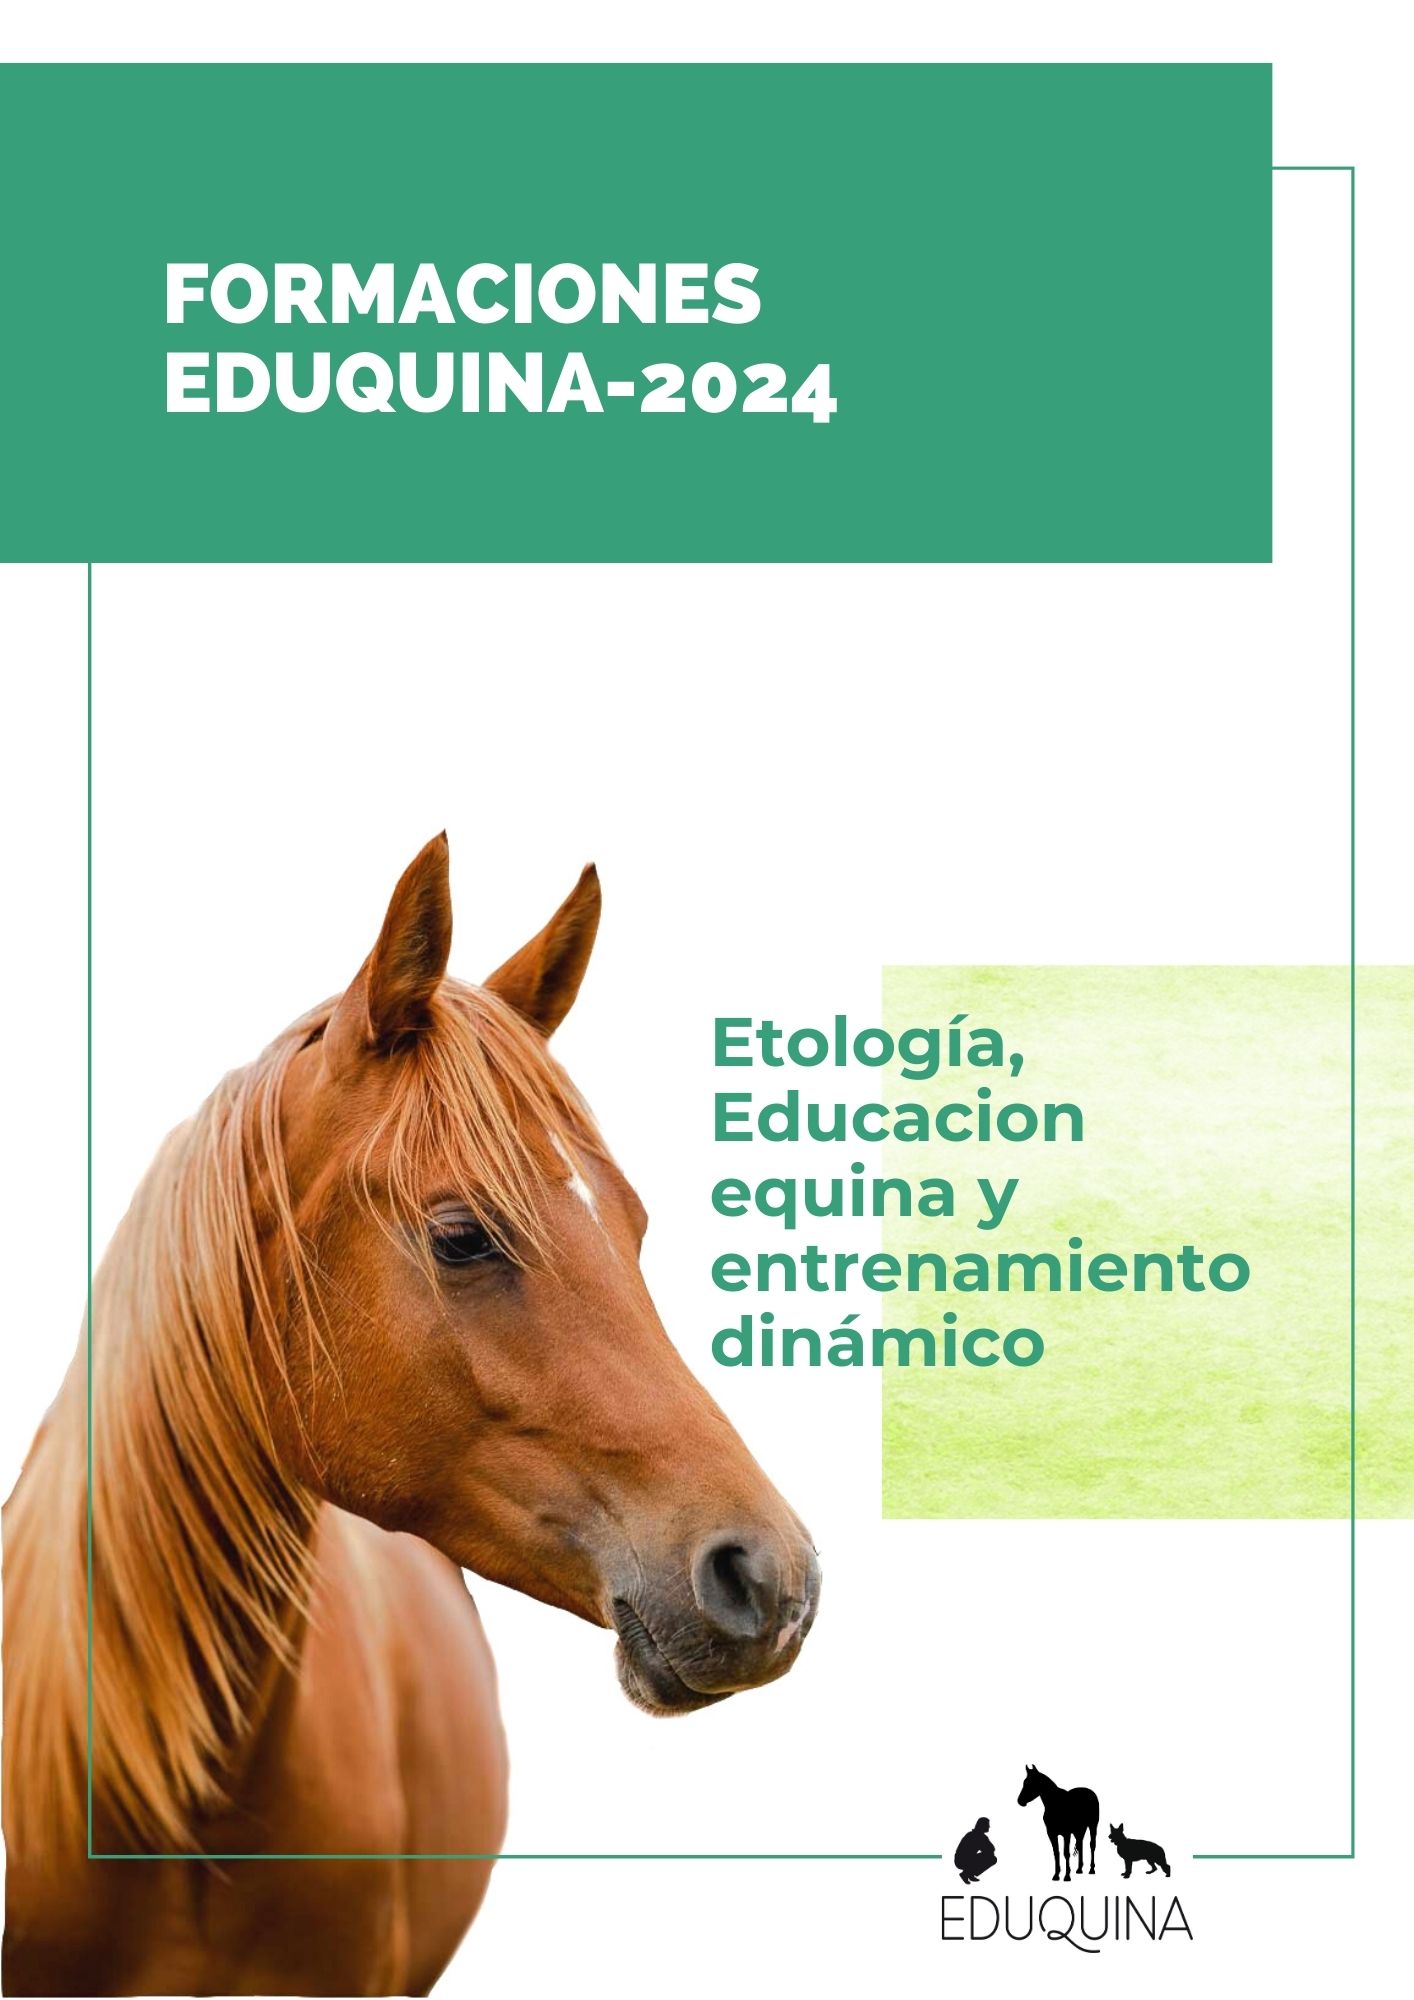 Formaciones EDUQUINA 2024